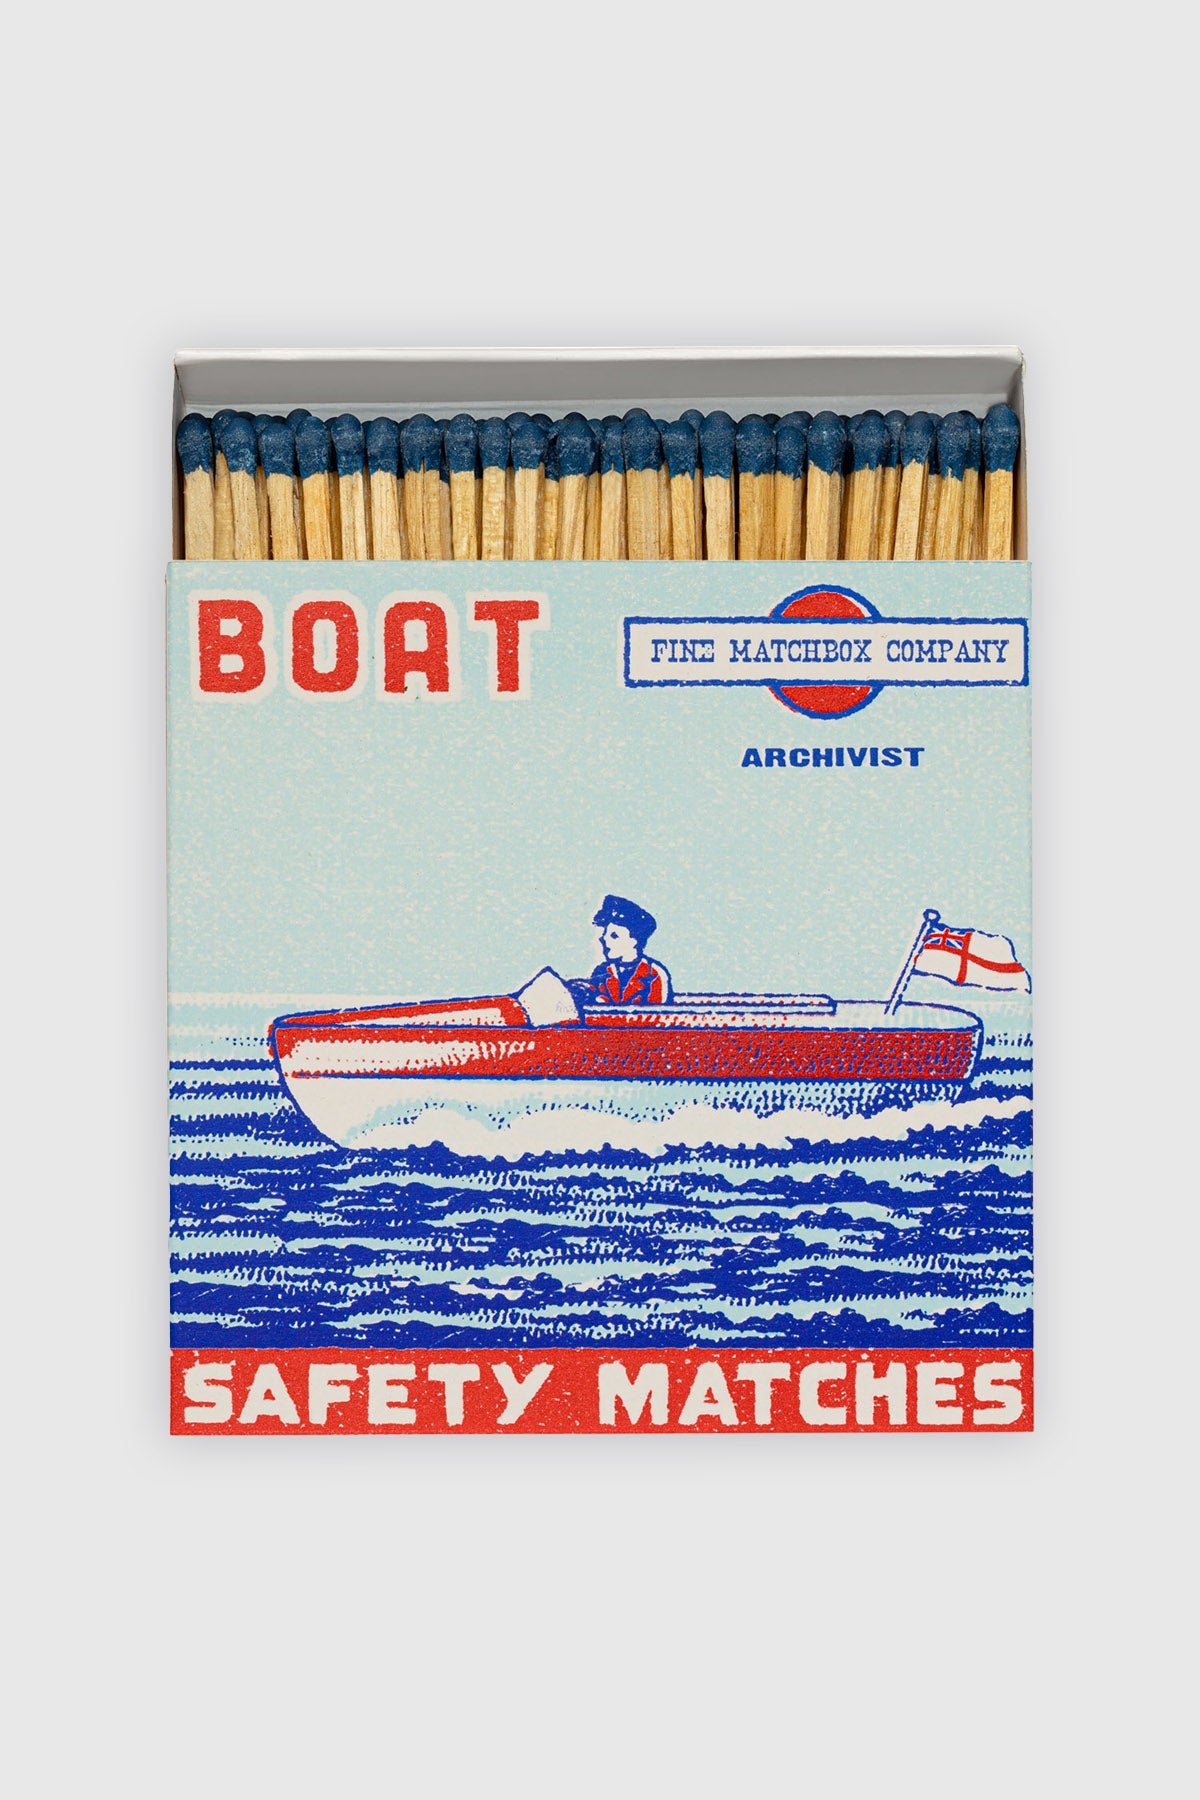 Matchbox "Boat"